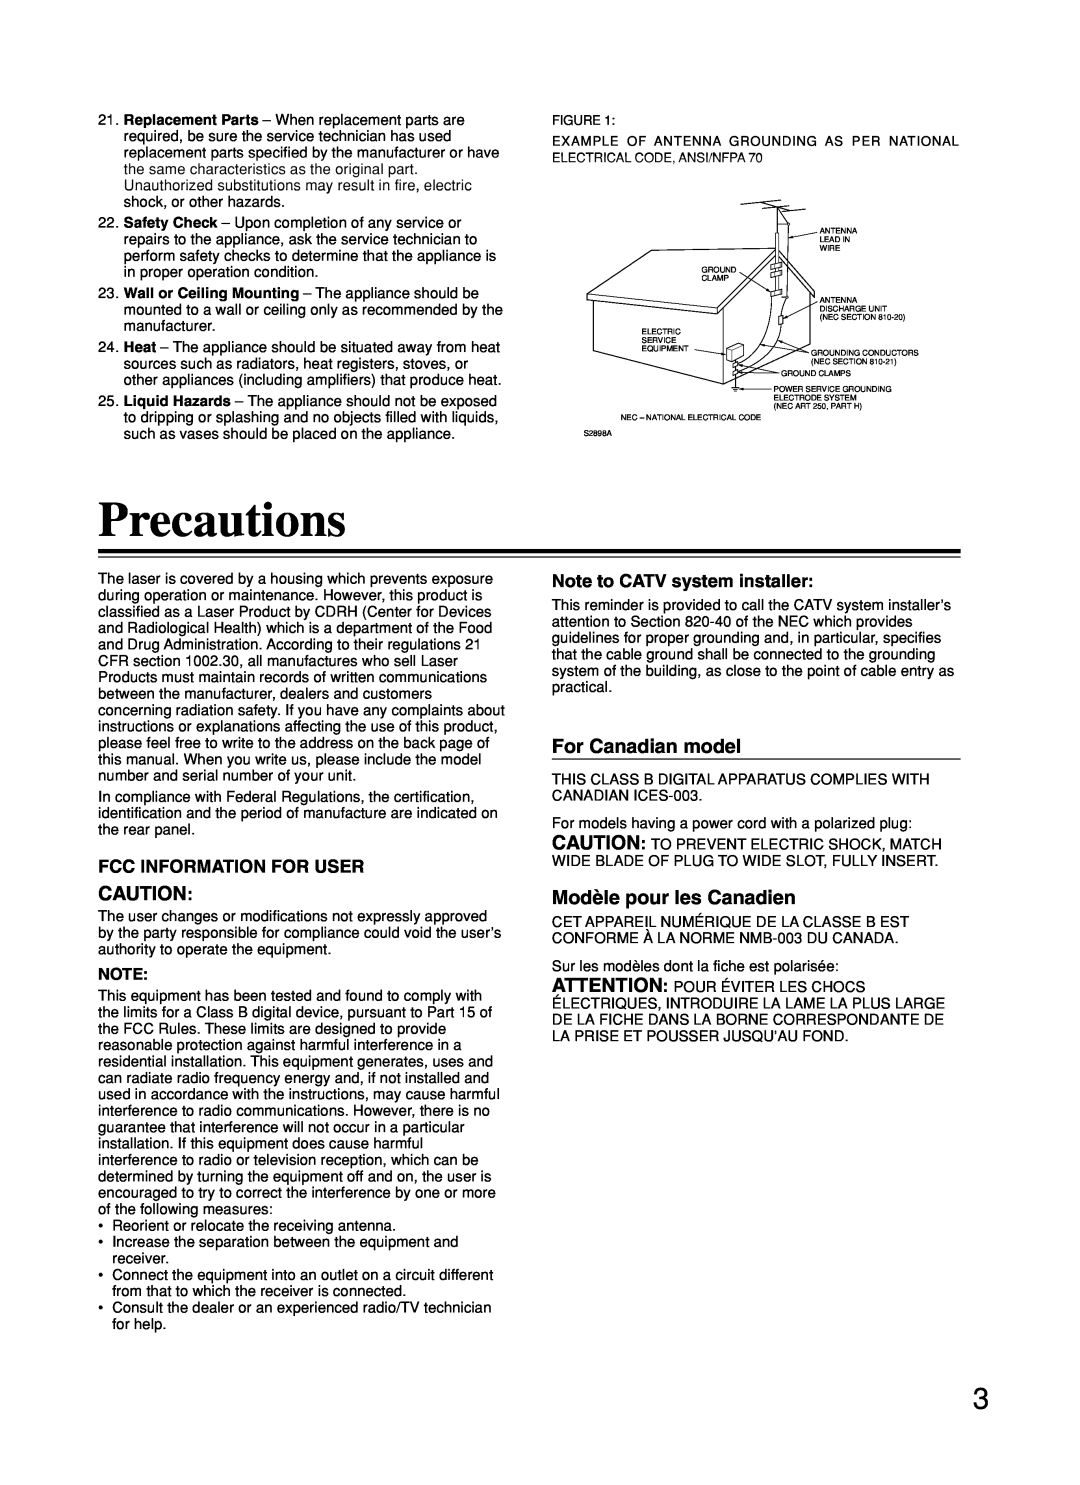 Onkyo DR-C500 instruction manual Precautions, For Canadian model, Modèle pour les Canadien, Fcc Information For User 